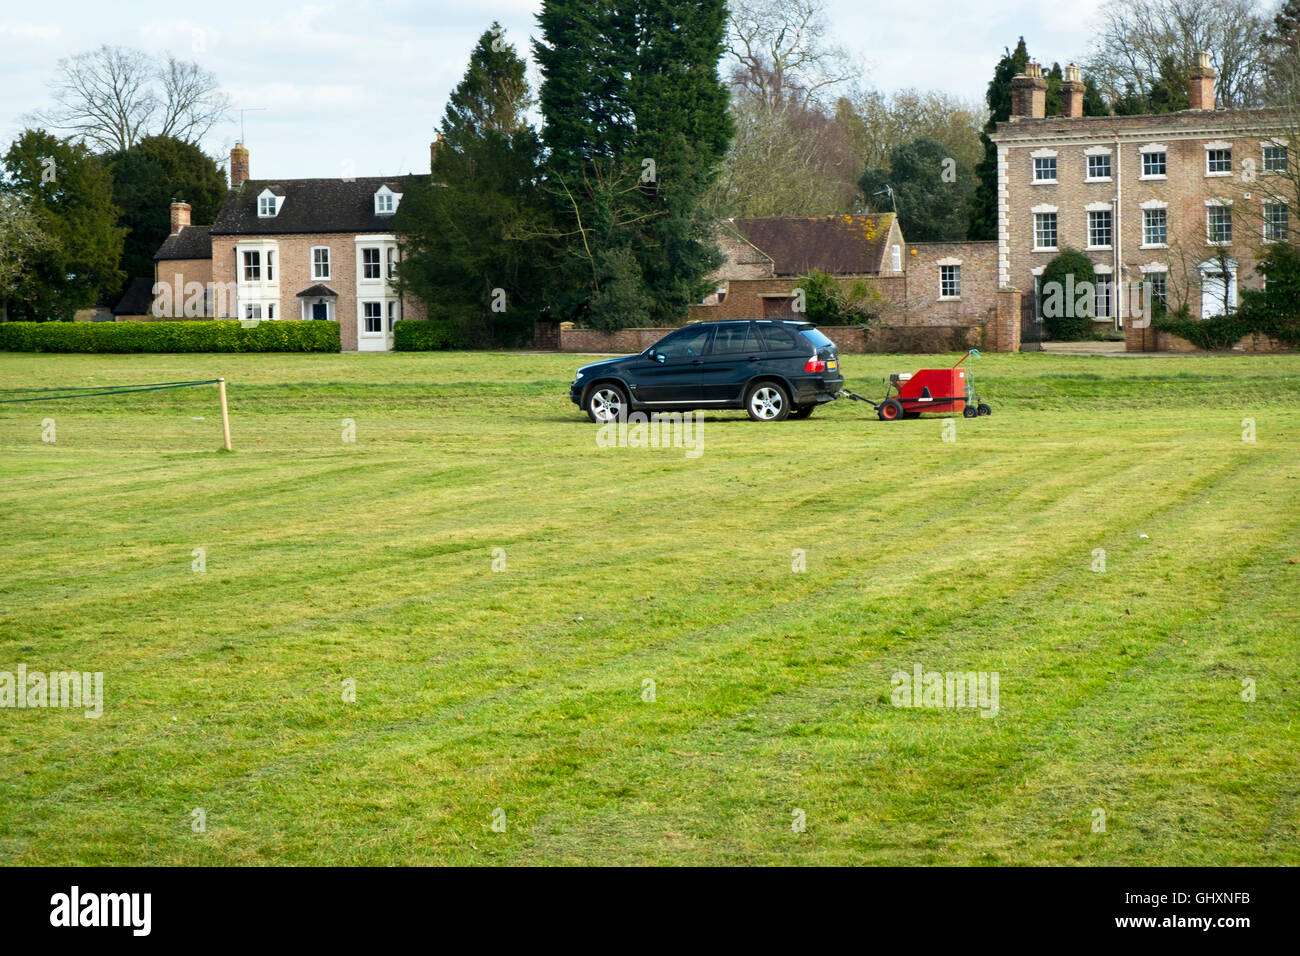 Ein Mähwerk mit einem BMW Auto abschleppen. Mähen der Cricket-Platz am Frampton auf Severn, Gloucestershire, UK Stockfoto